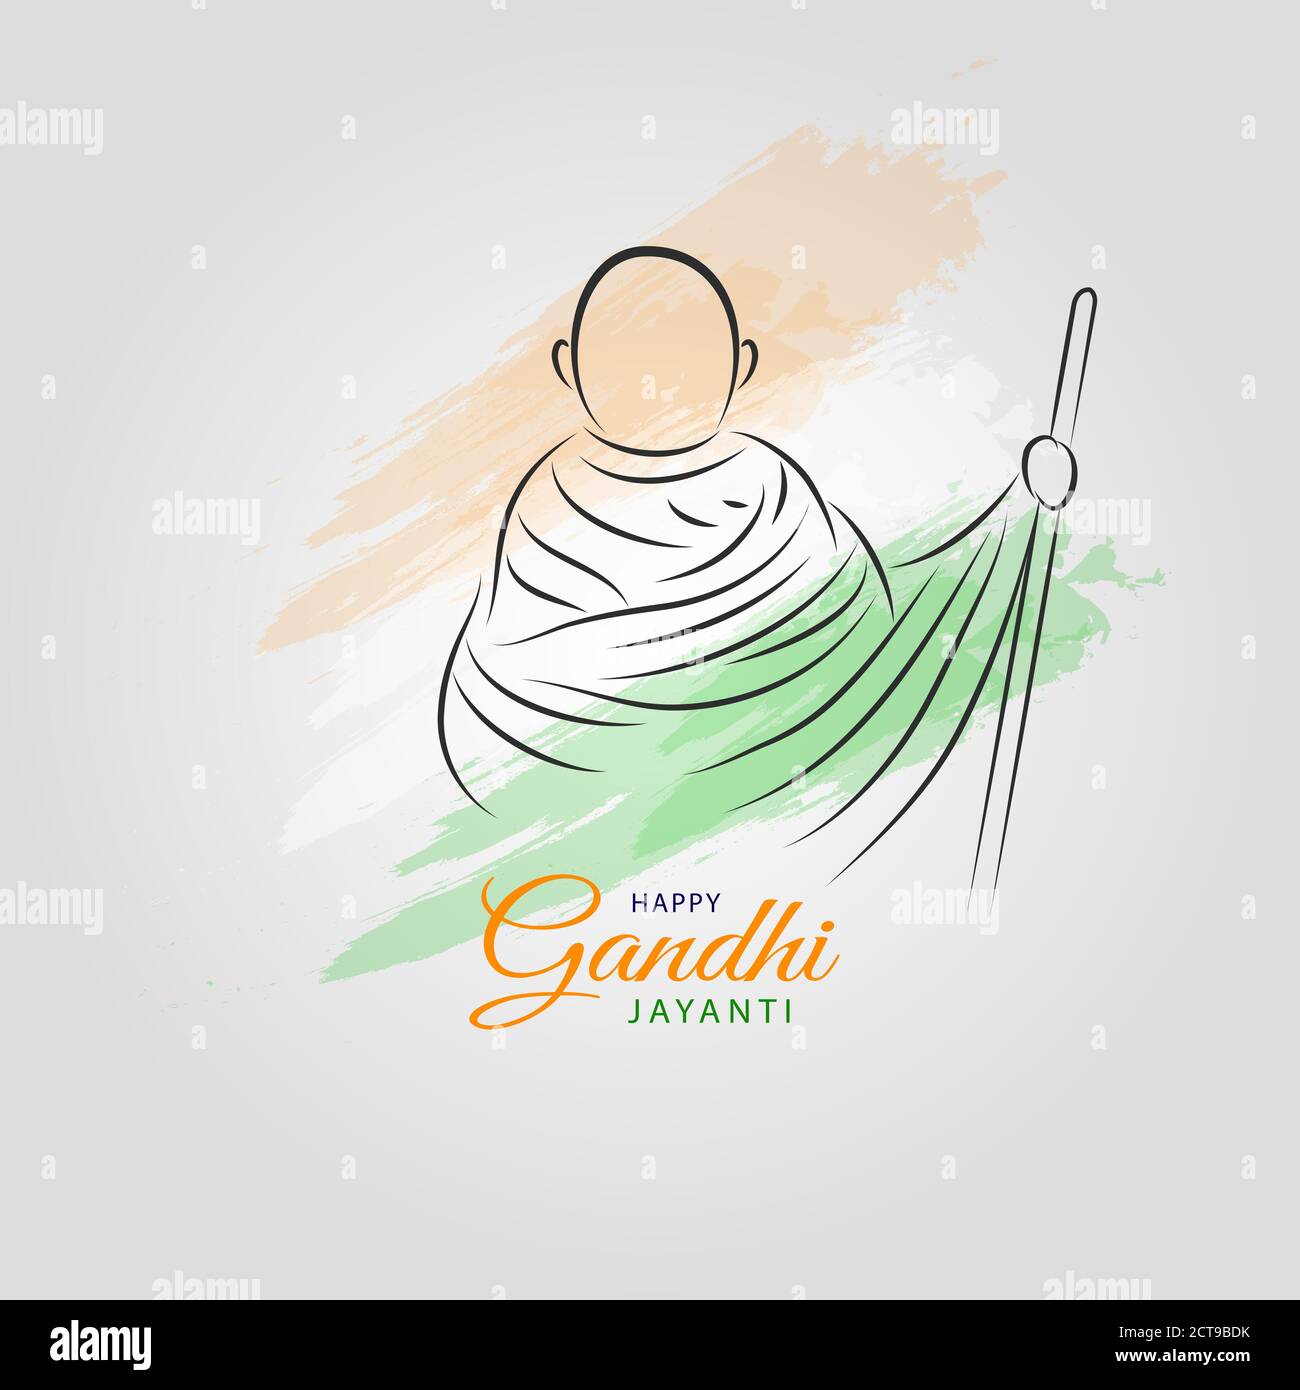 2. Oktober Happy Gandhi Jayanti Abstrakte Skizze von Gandhi Ji Lineart Vektor-Illustration mit indischen Flagge Tri Farben für Gandhi Jayanti Wünsche. Stock Vektor